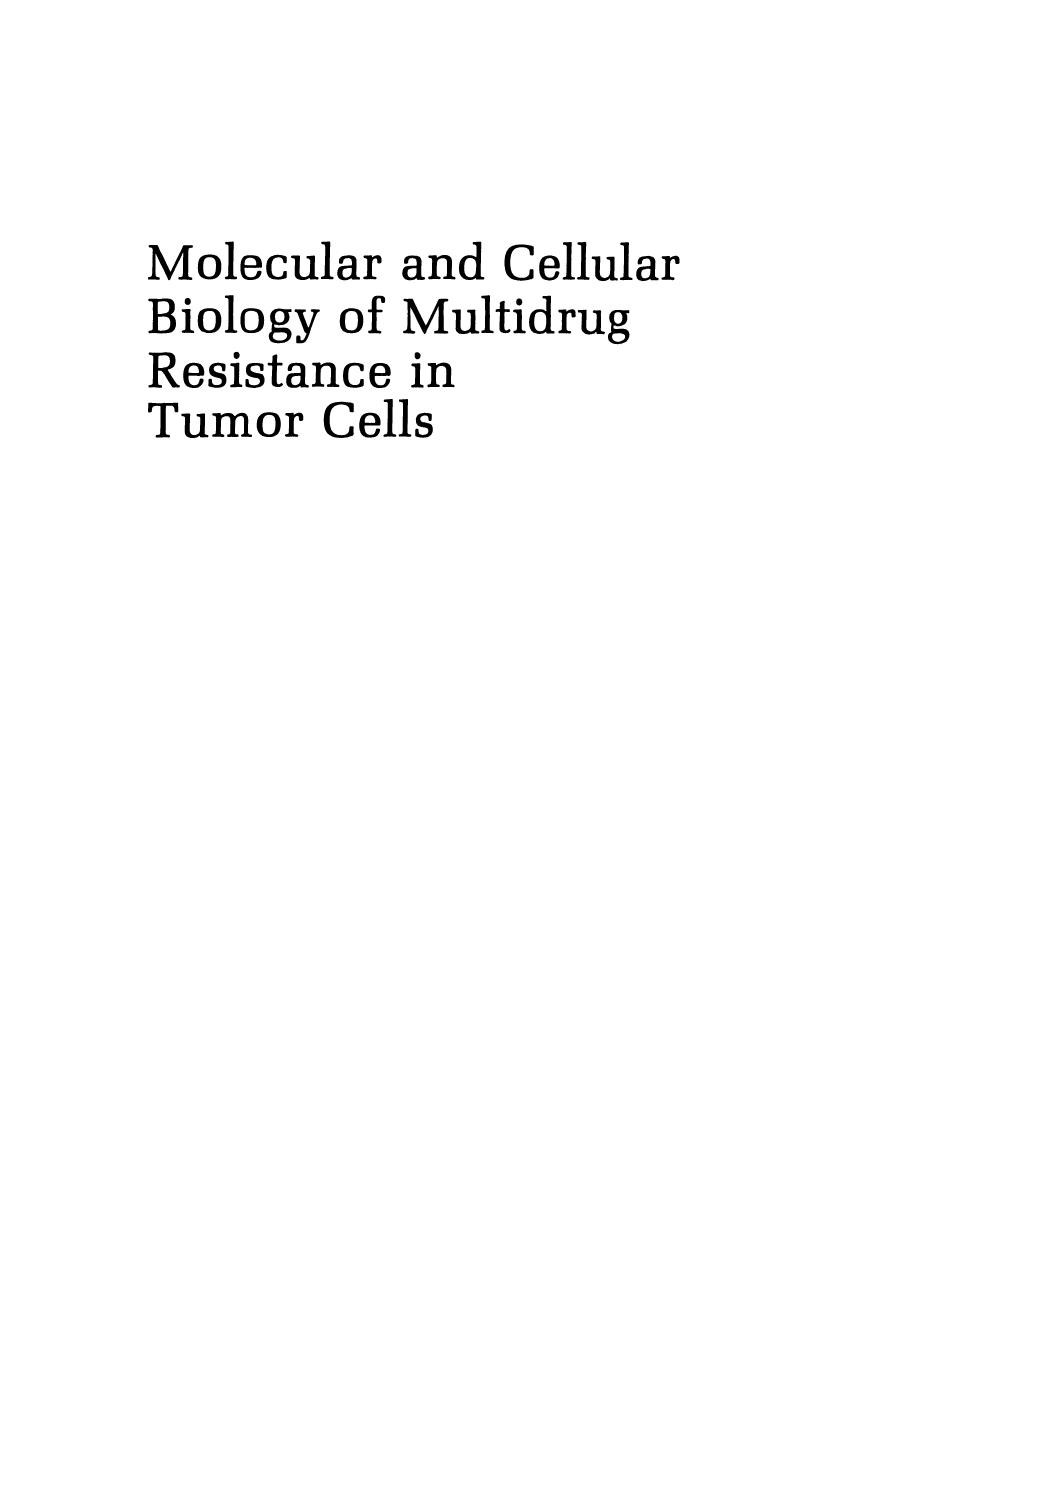 Molecular and Cellular Biology of Multidrug Resistance in Tumor Cells 1991.pdf